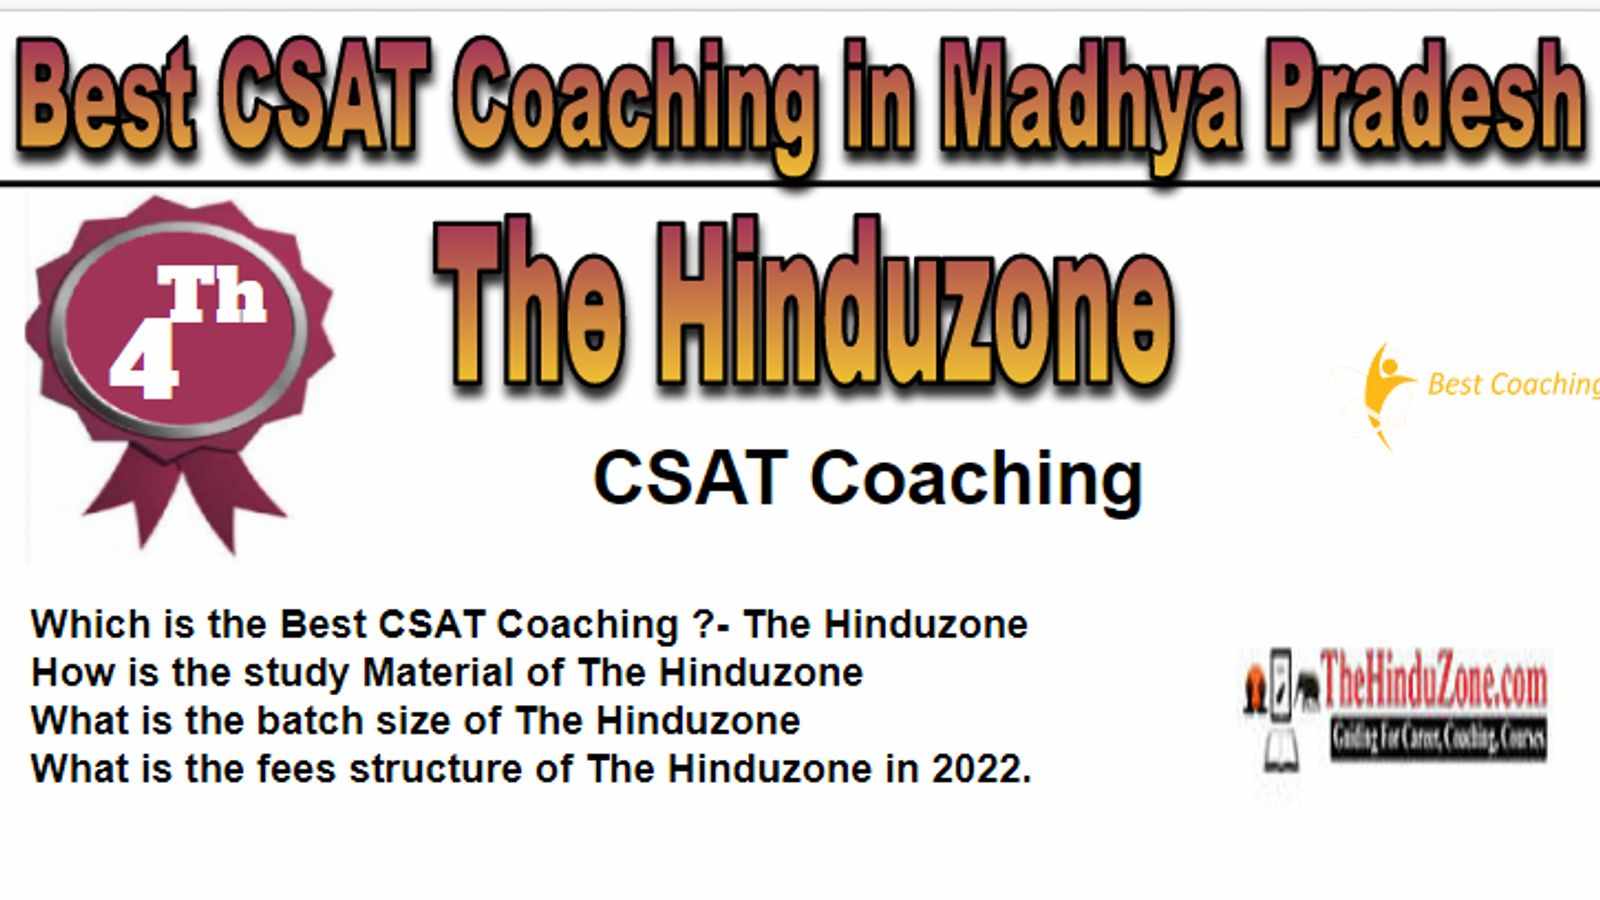 Rank 4 Best CSAT Coaching in Madhya Pradesh